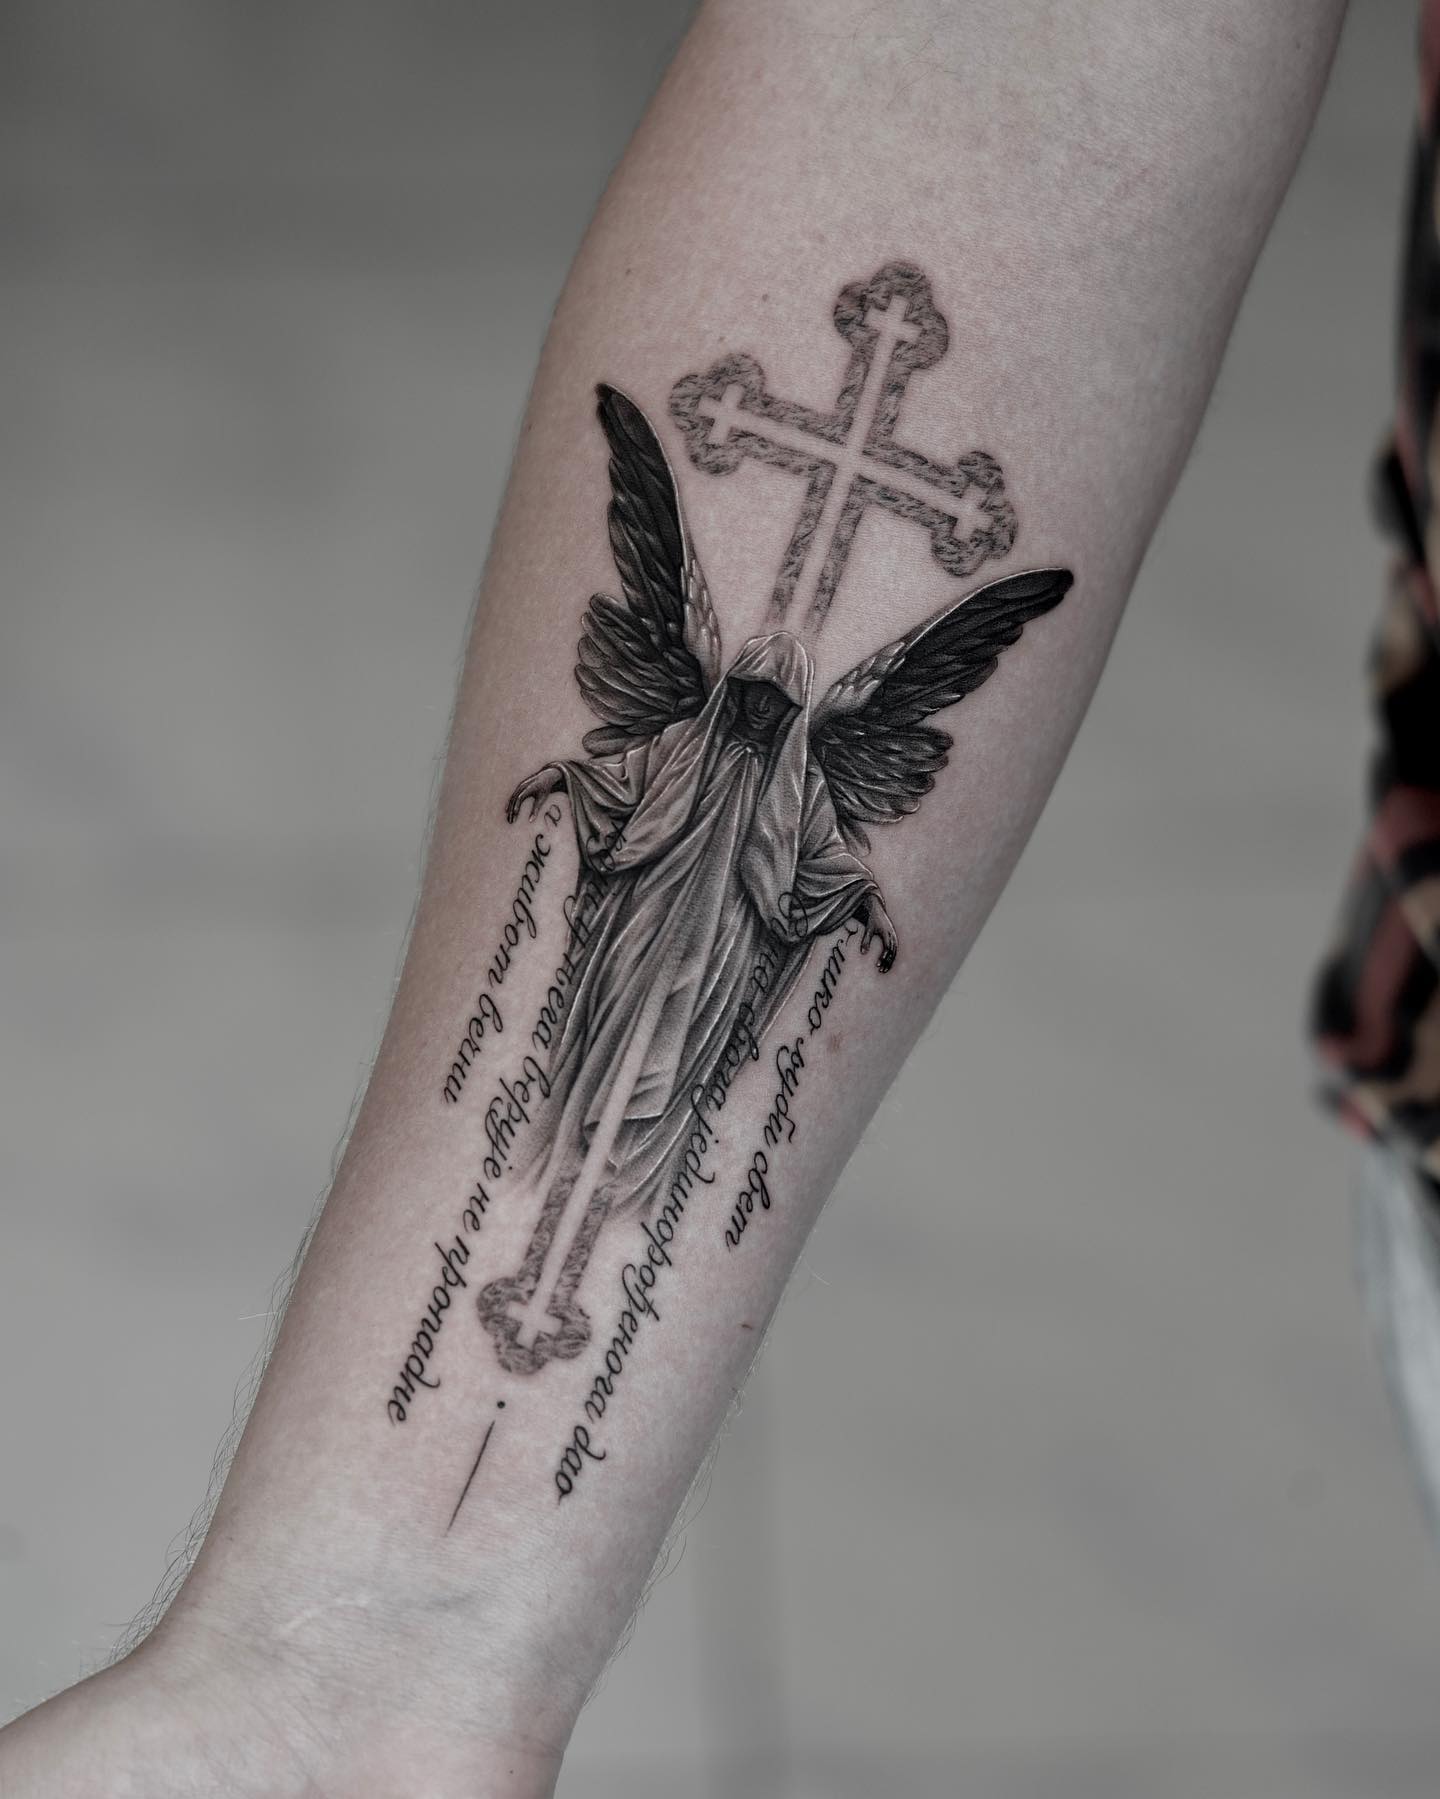 Tatuaje de cruz en el muslo.